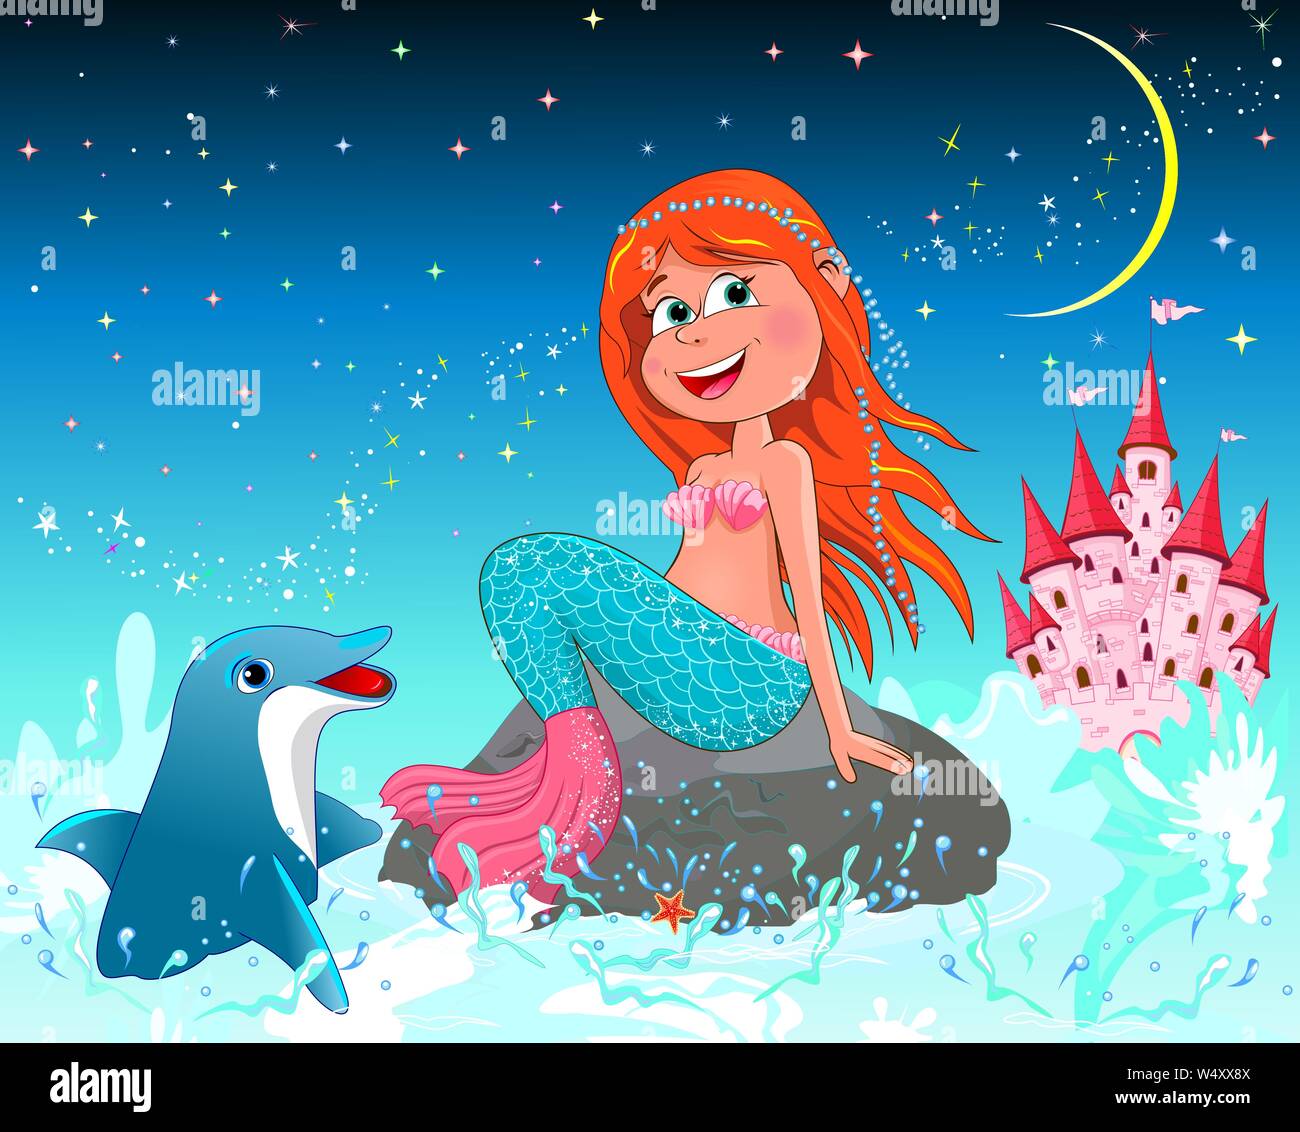 Eine schöne Meerjungfrau sitzt auf einem Stein. Meerjungfrau und Delphin auf dem Hintergrund einer Nacht Sternenhimmel. Pink Princess schloss. Stock Vektor